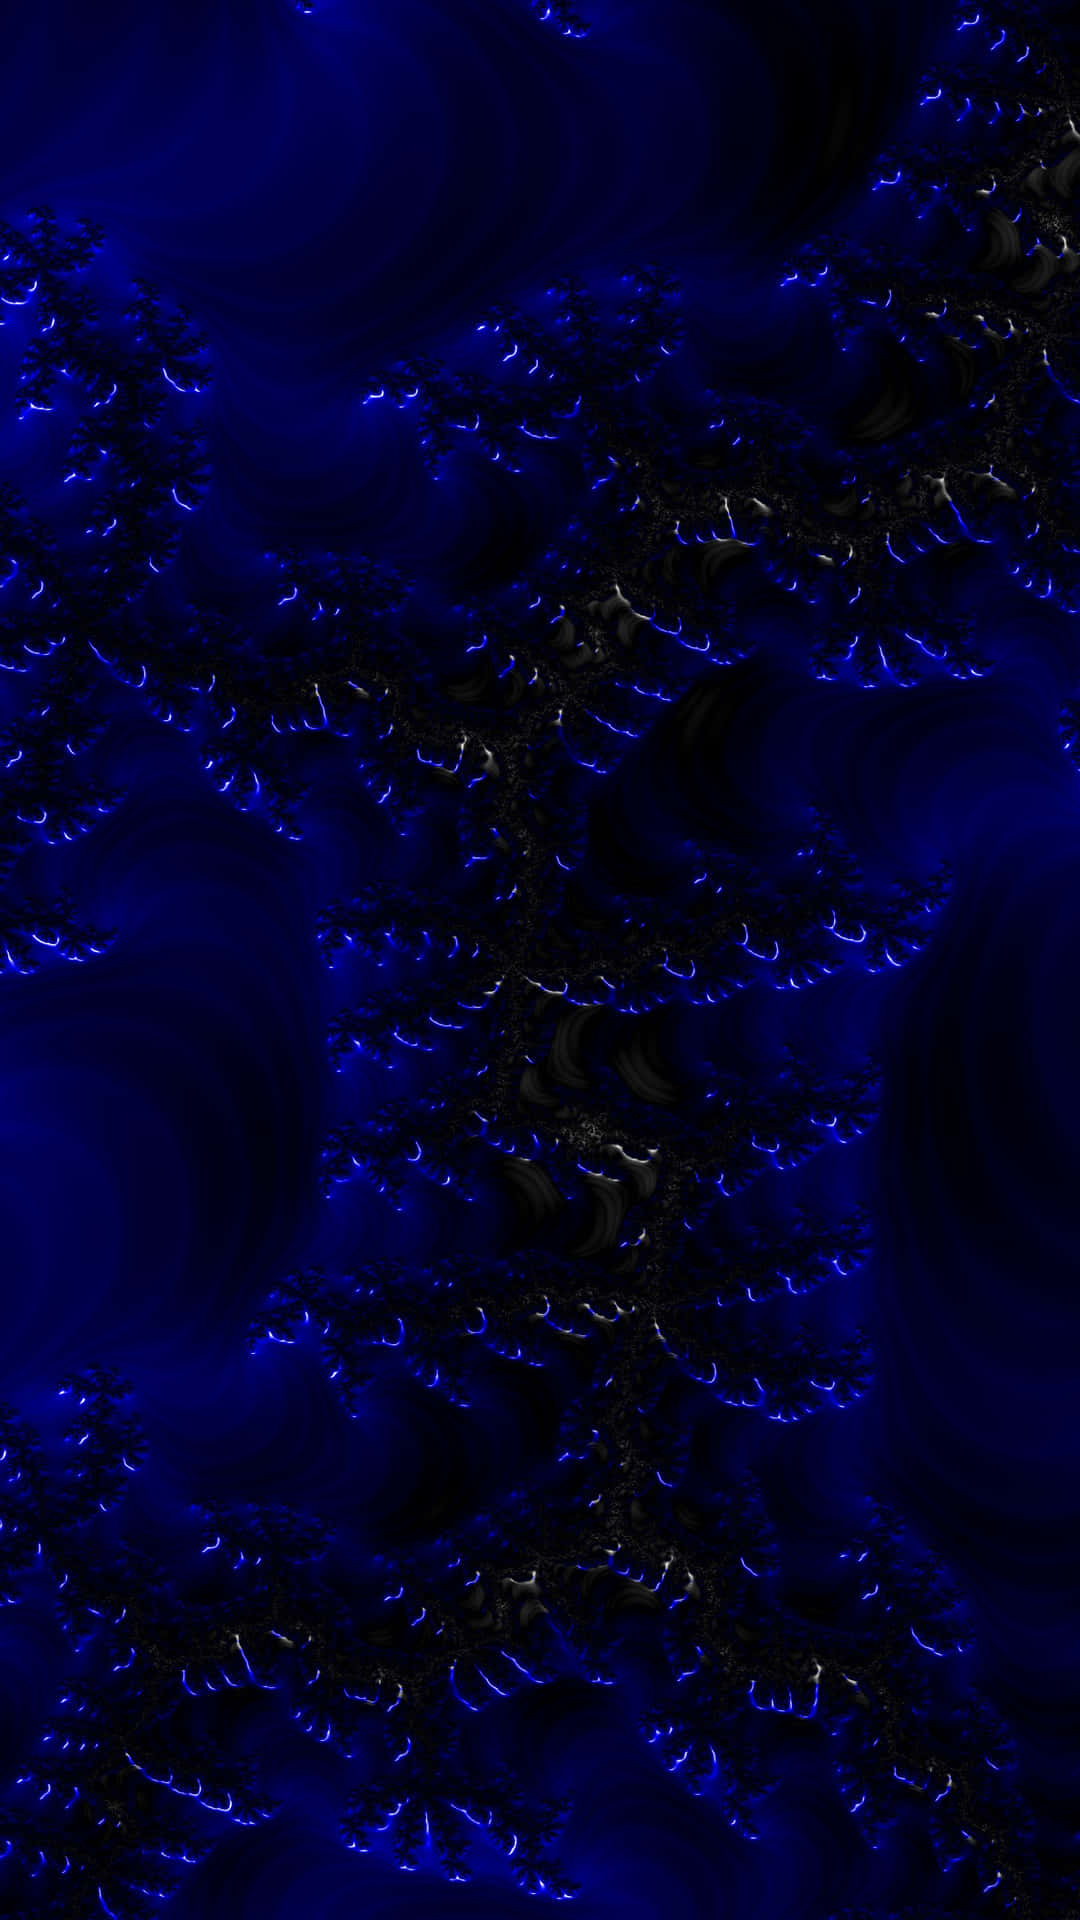 Abstract_ Blue_ Fractal_ Art.jpg Wallpaper